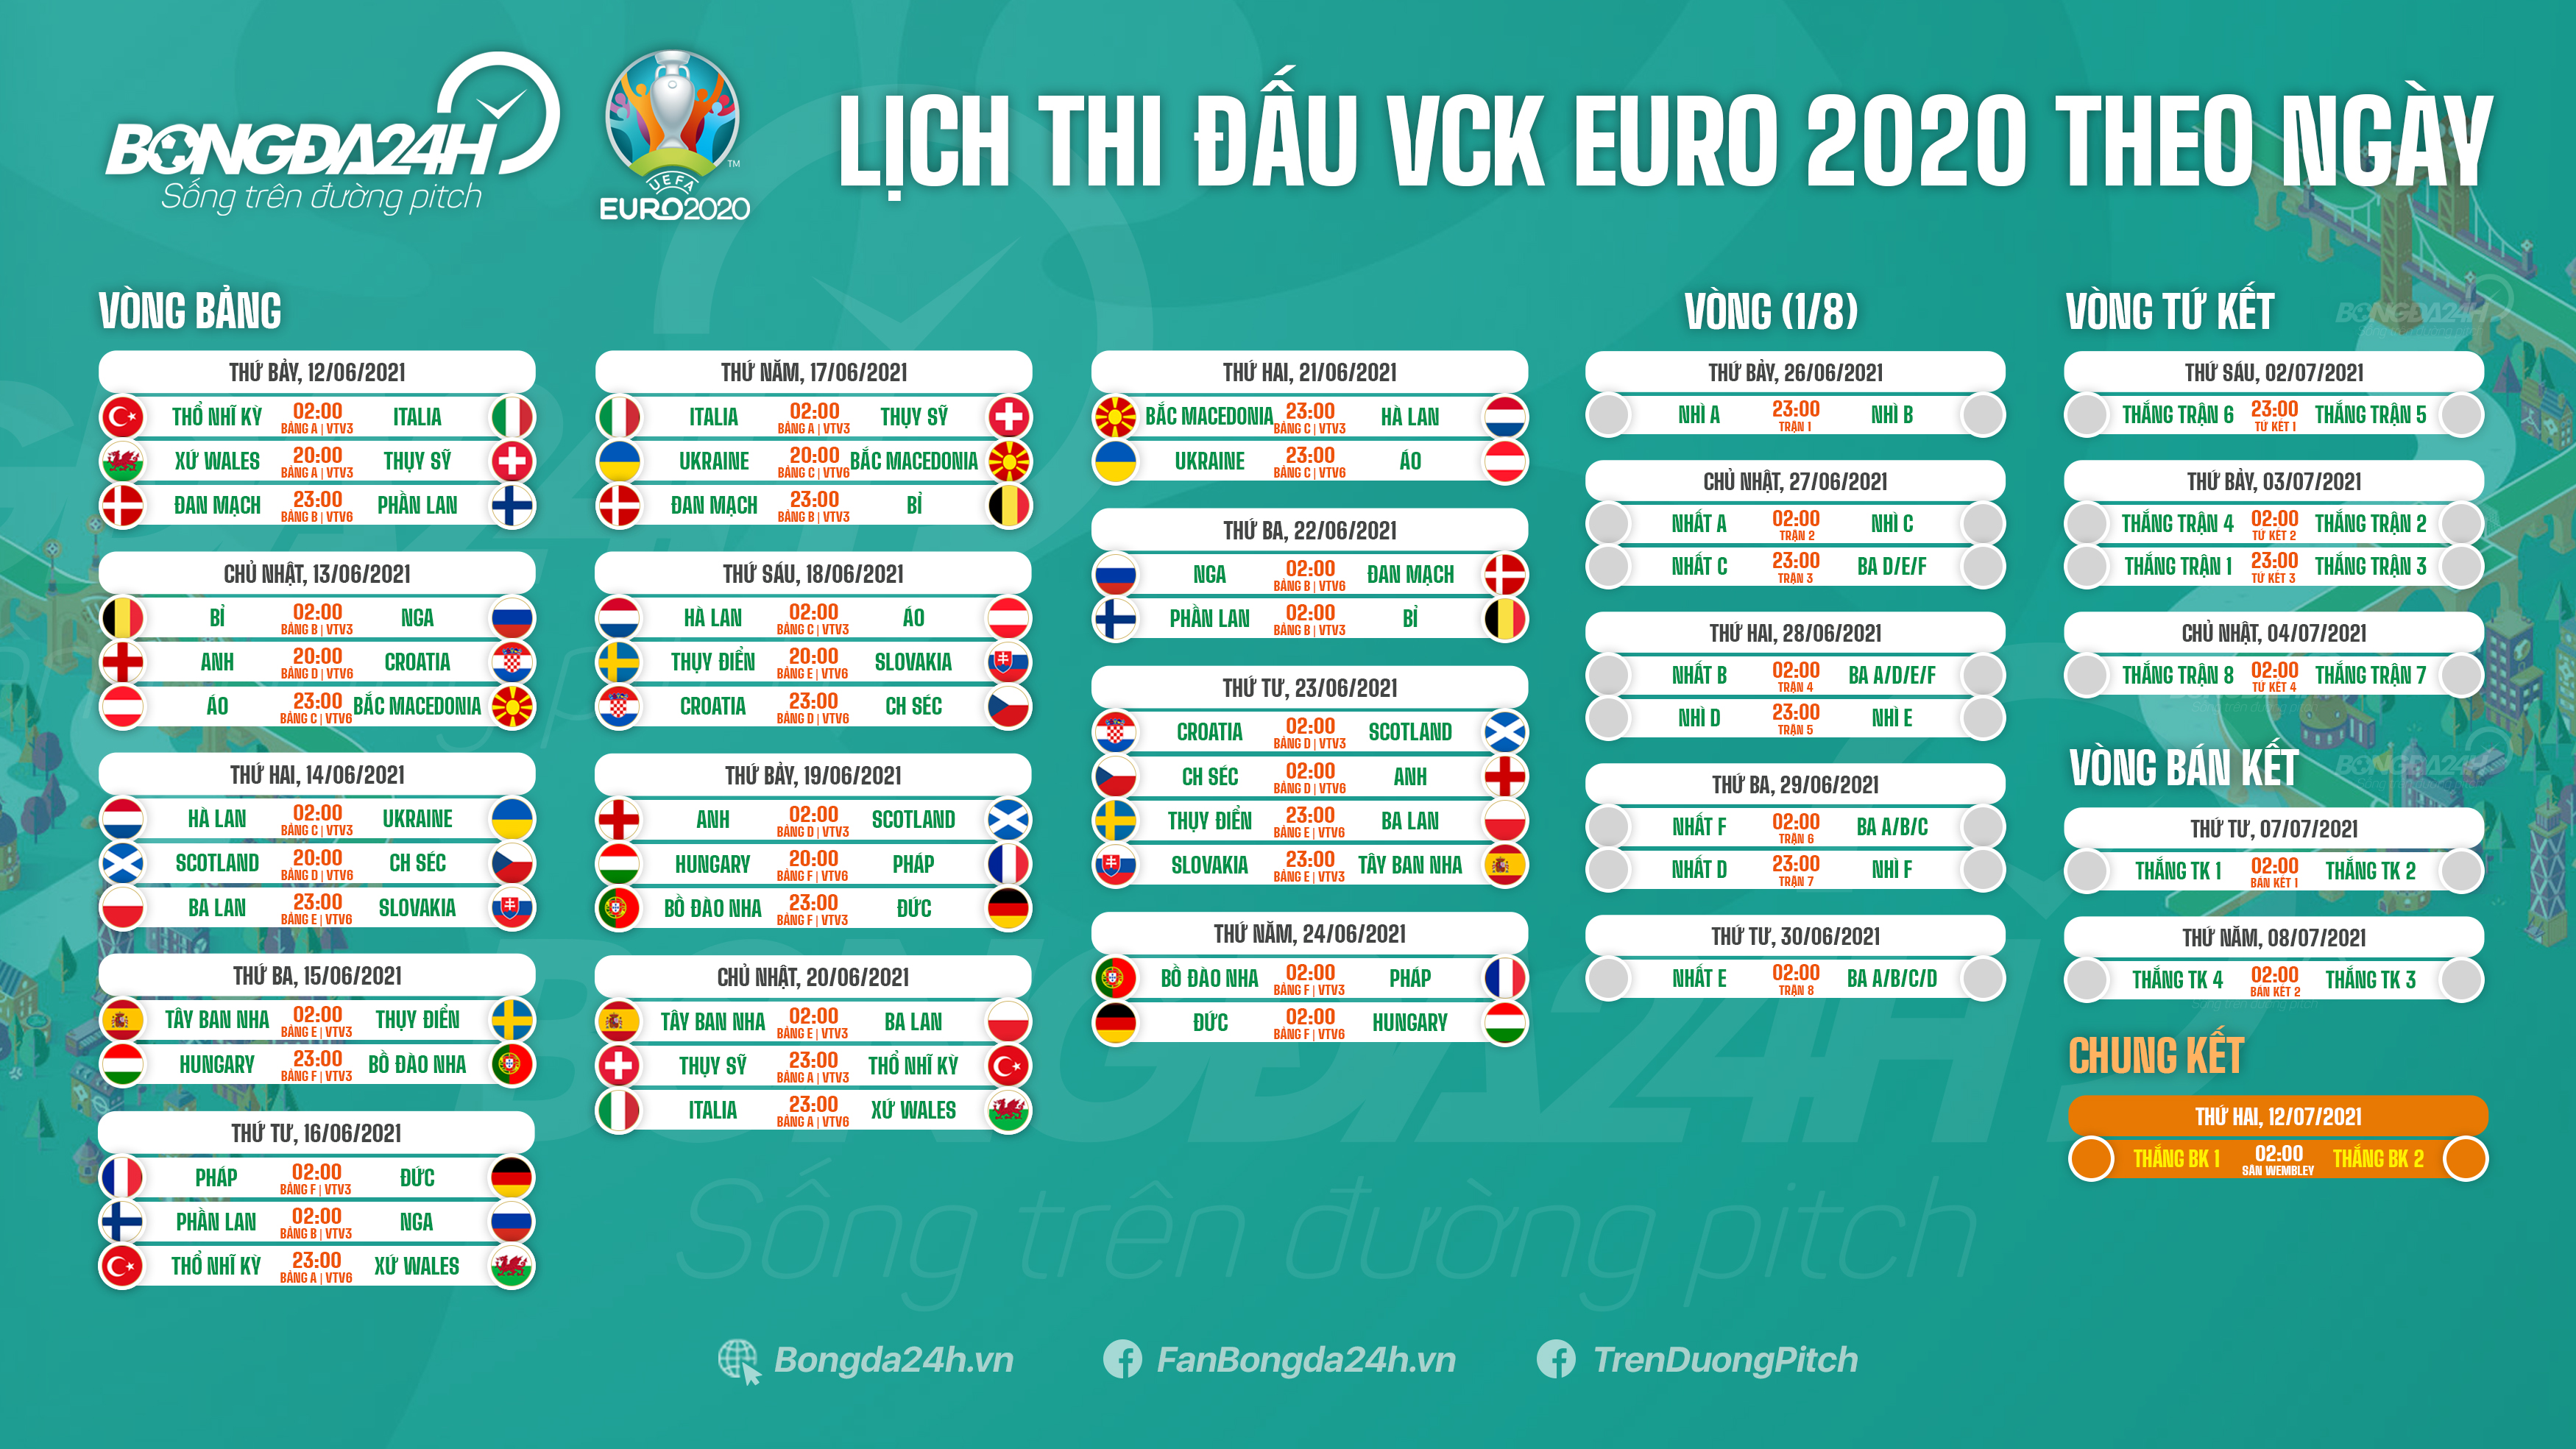 Share mẫu lịch thi đấu bóng đá Euro 2021 CDR12  VTPcorel   VTPcorel  DV  Thương mại File TK